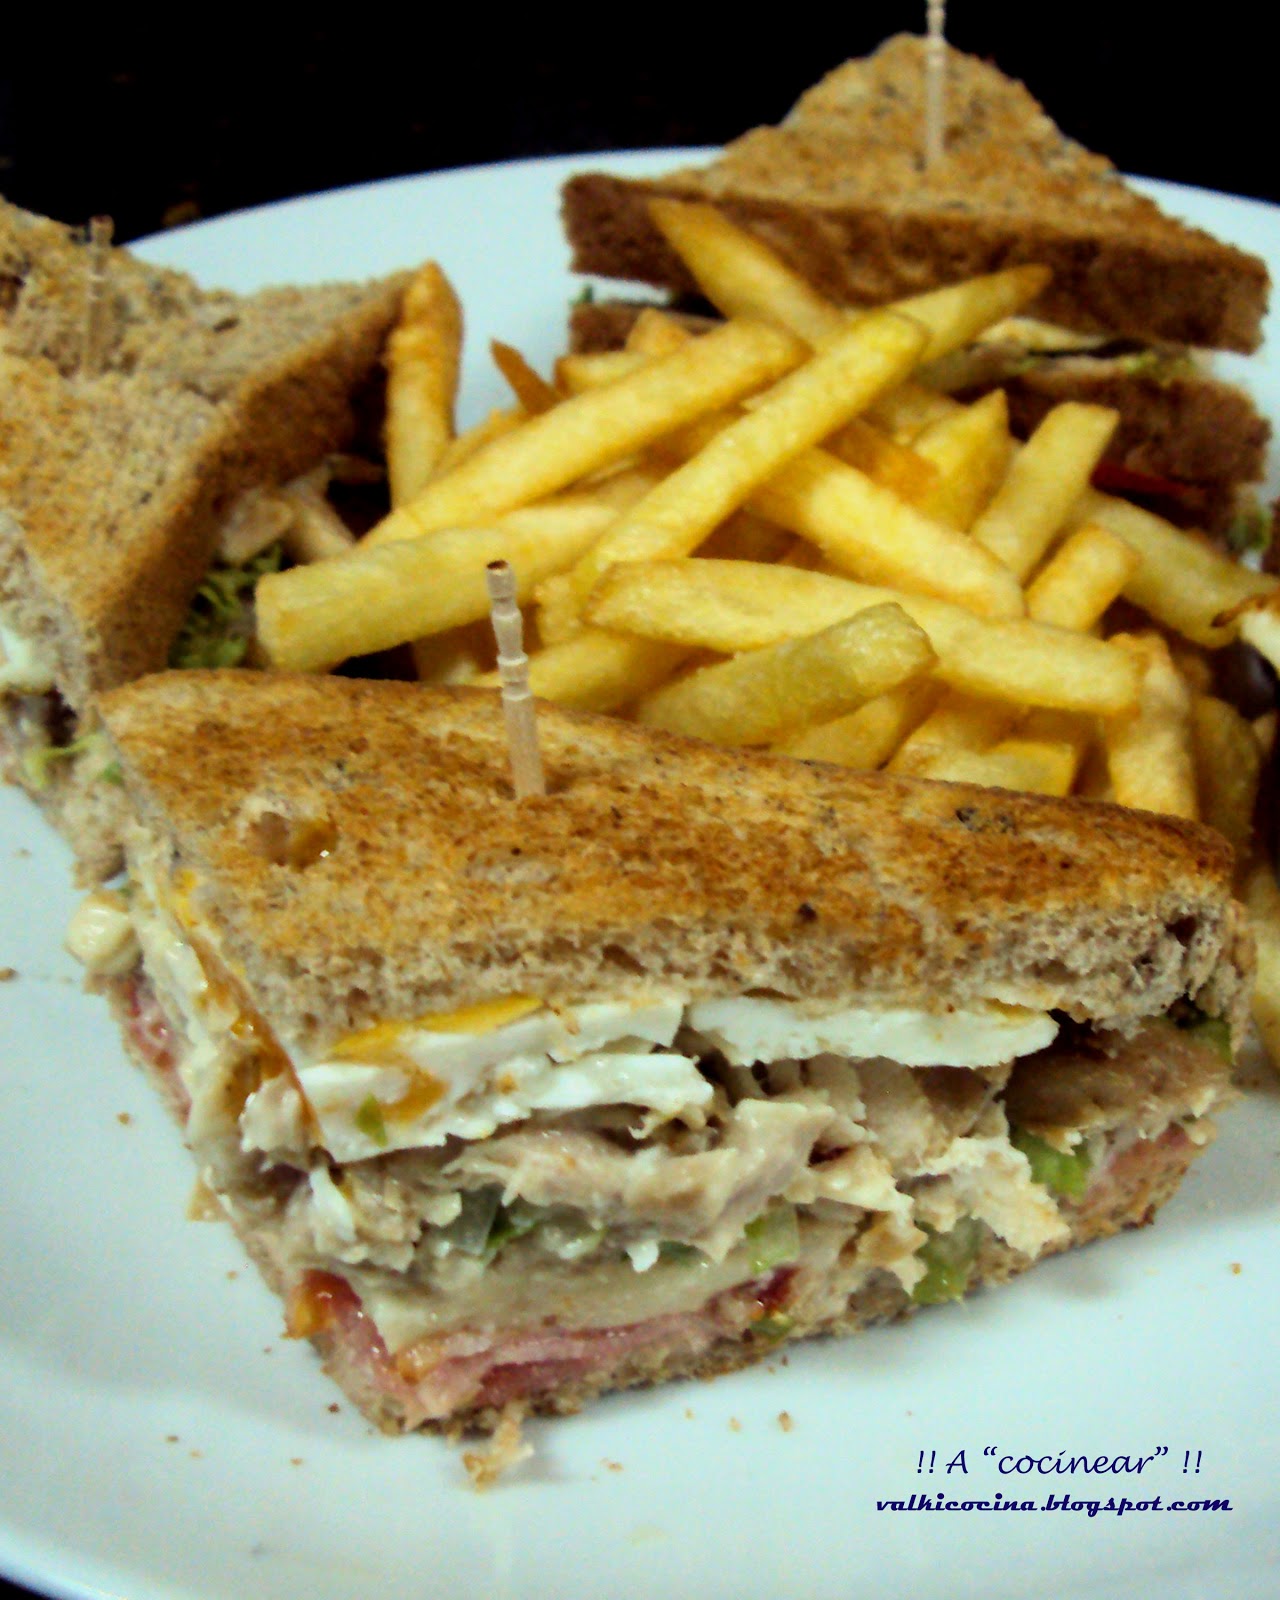 Sandwich Club
